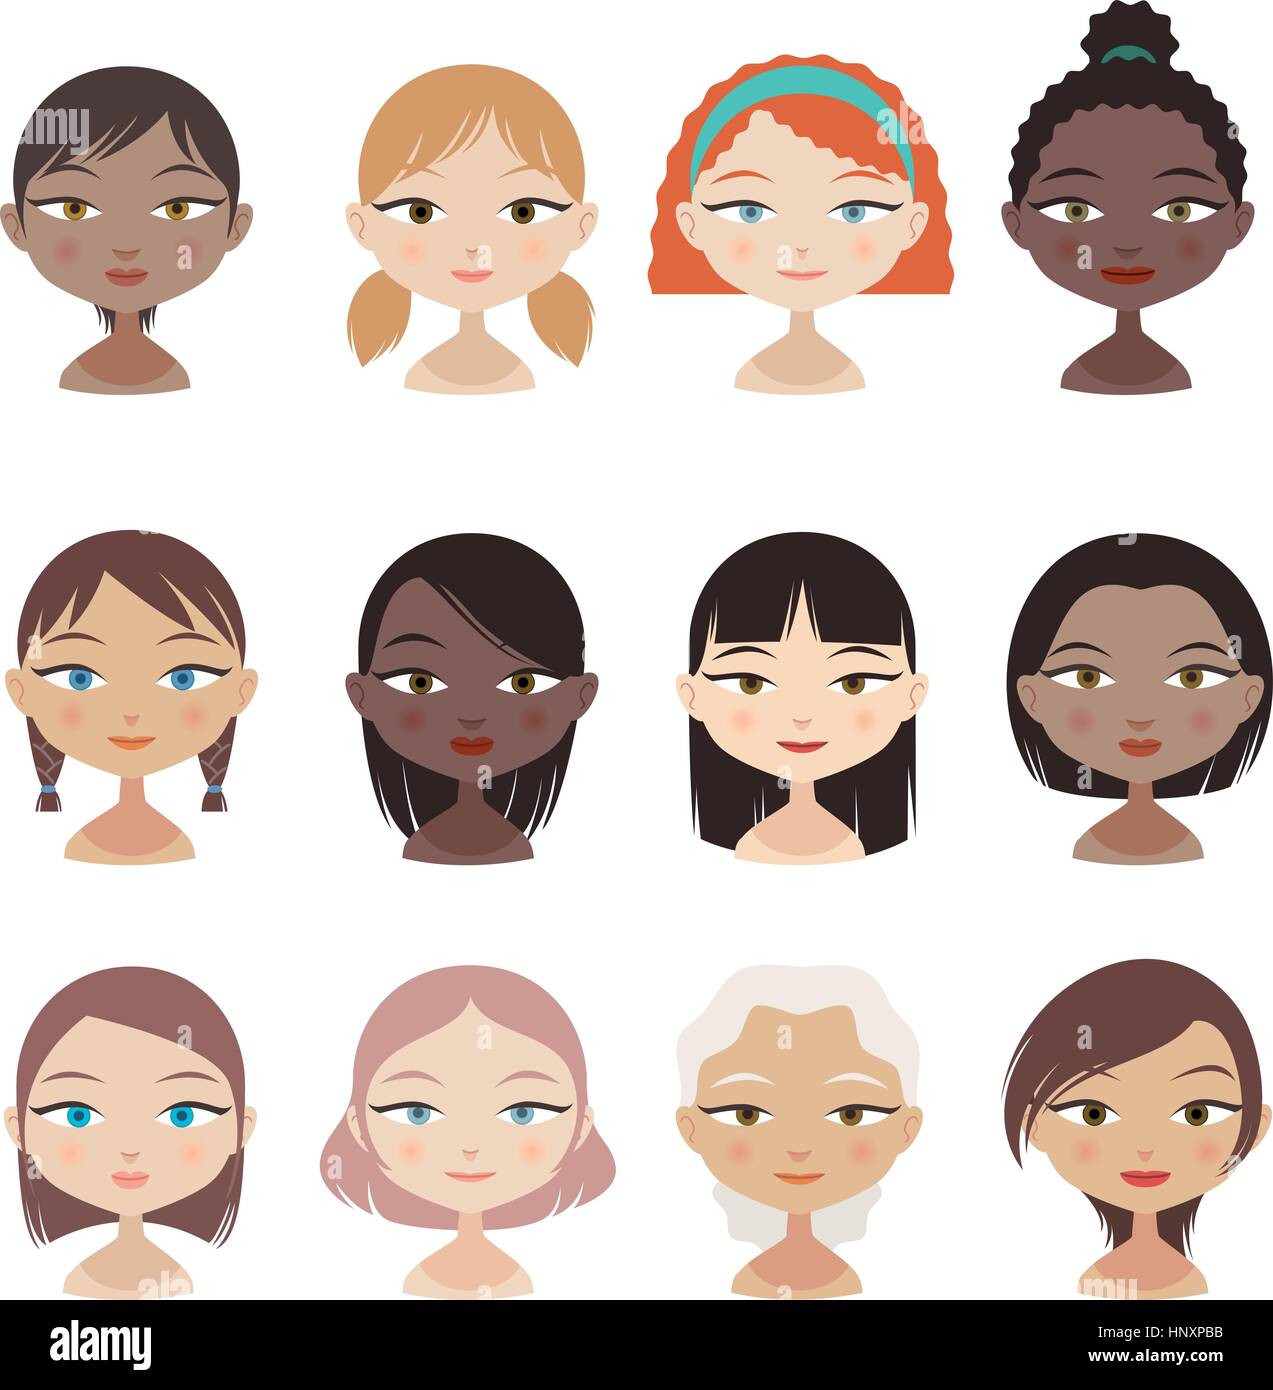 Testa e la spalla persone Avatar Profilo Set di caratteri ragazza facce, con 12 dodici diverse la testa e il profilo della spalla di avatar con differenti acconciatura Illustrazione Vettoriale